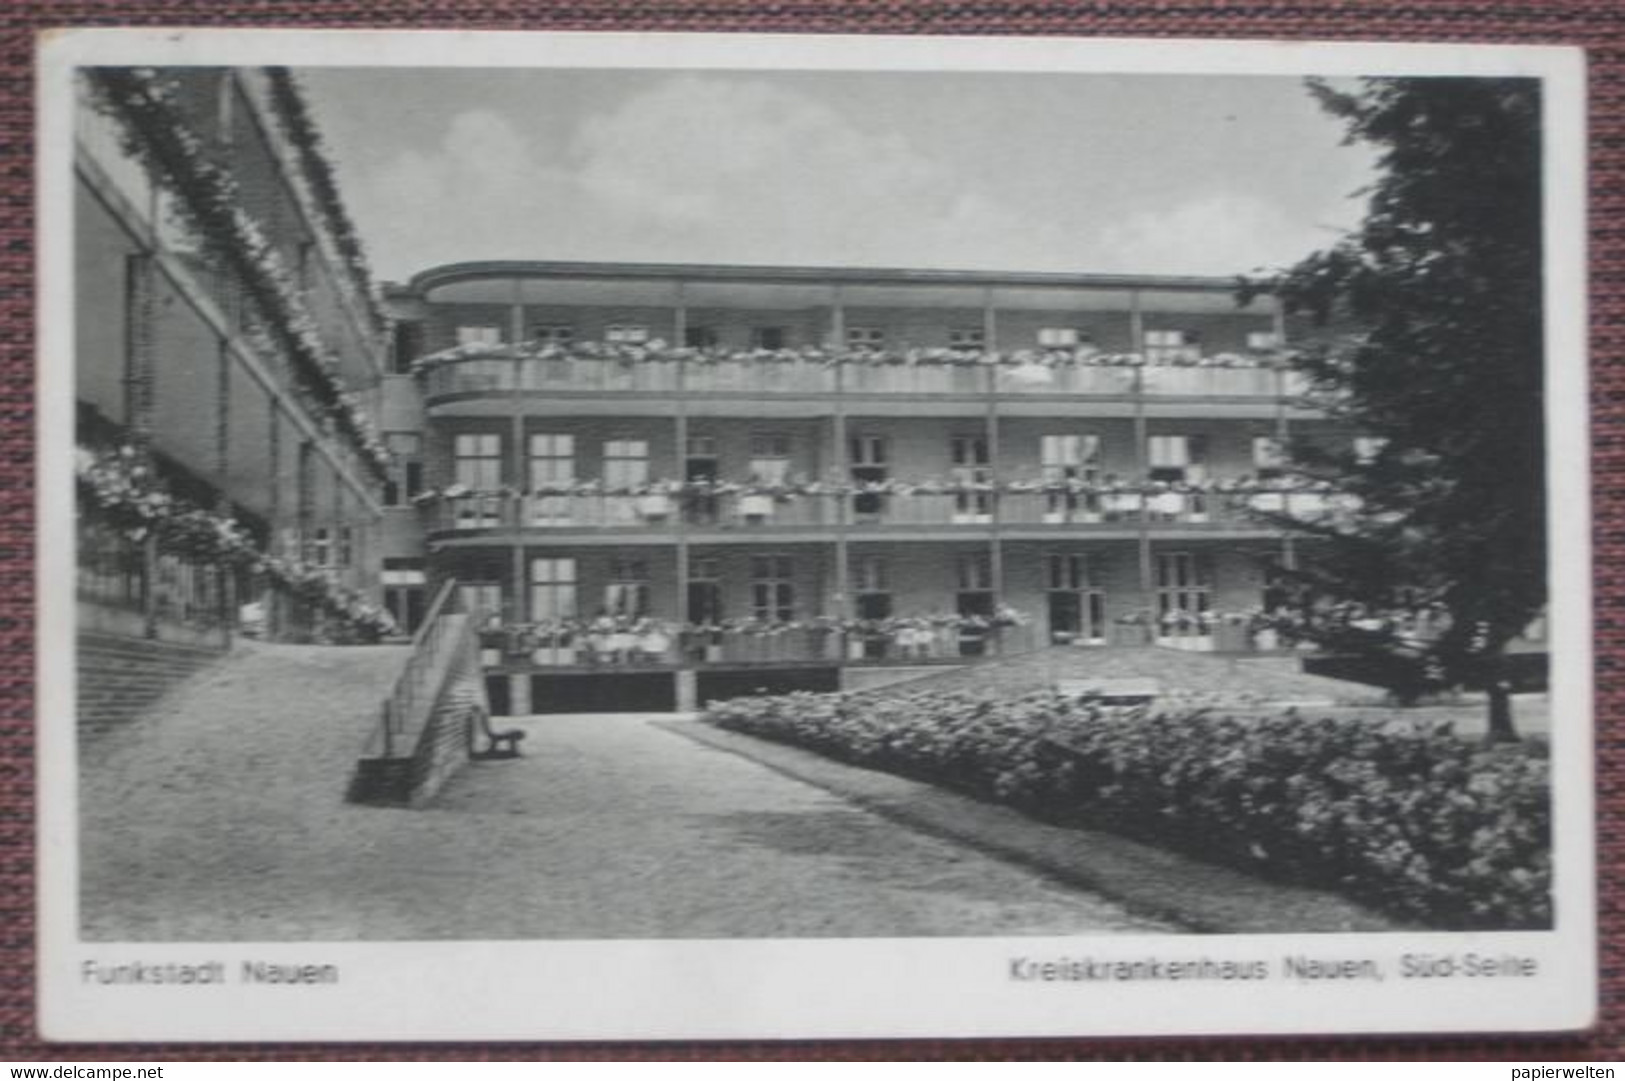 Nauen (Havelland) - Kreiskrankenhaus Südseite 1943 / Feldpost - Nauen